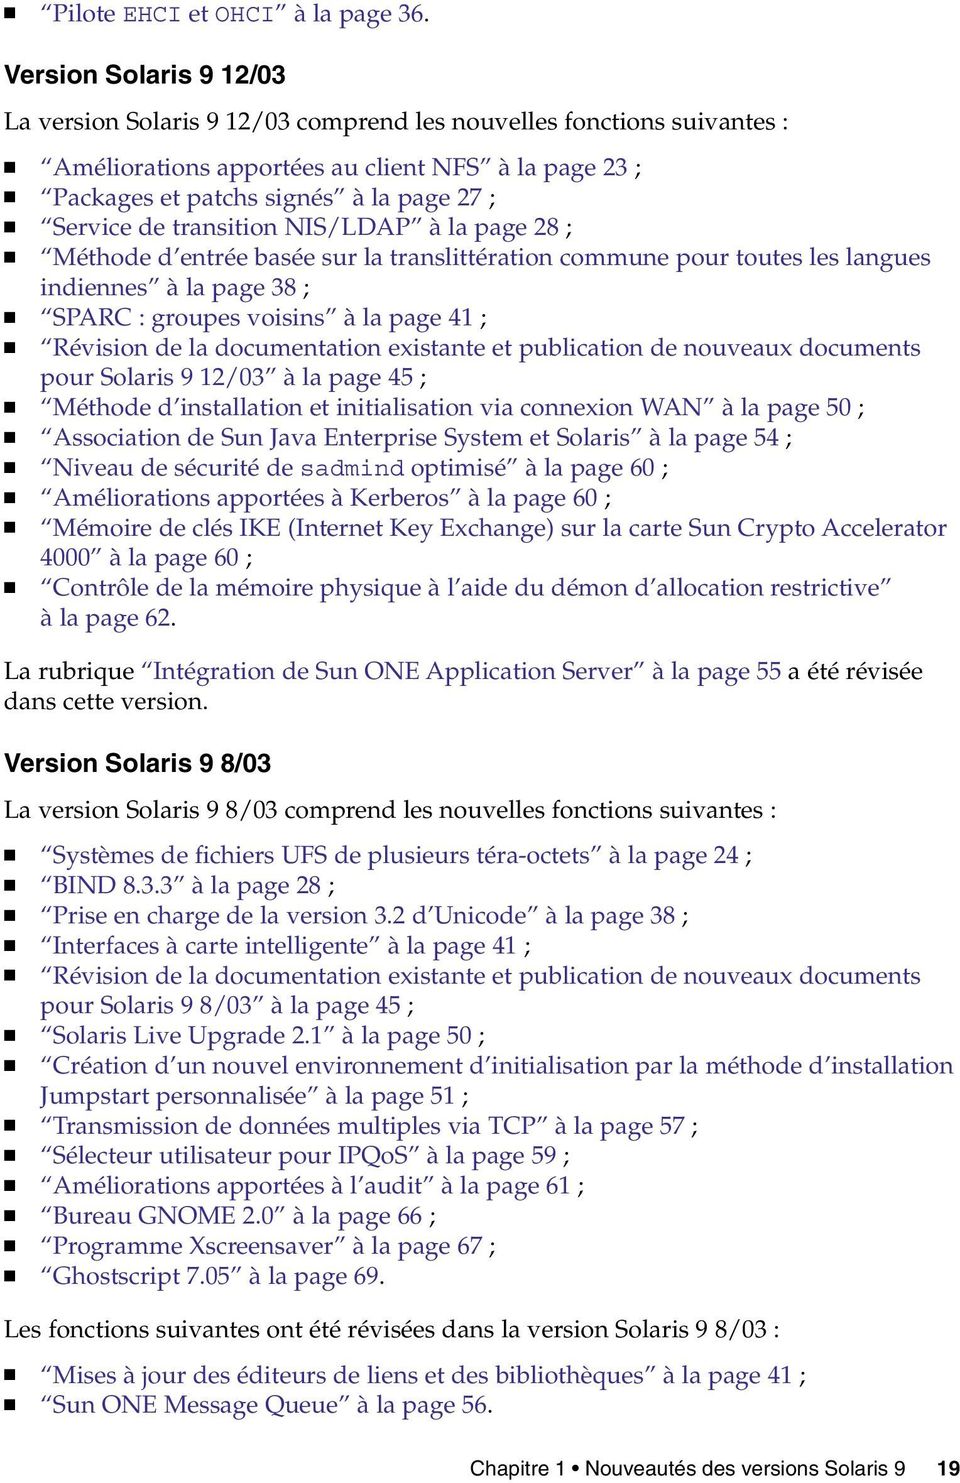 transition NIS/LDAP àla page 28 ; Méthode d entrée basée sur la translittération commune pour toutes les langues indiennes àla page 38 ; SPARC : groupes voisins àla page 41 ; Révision de la